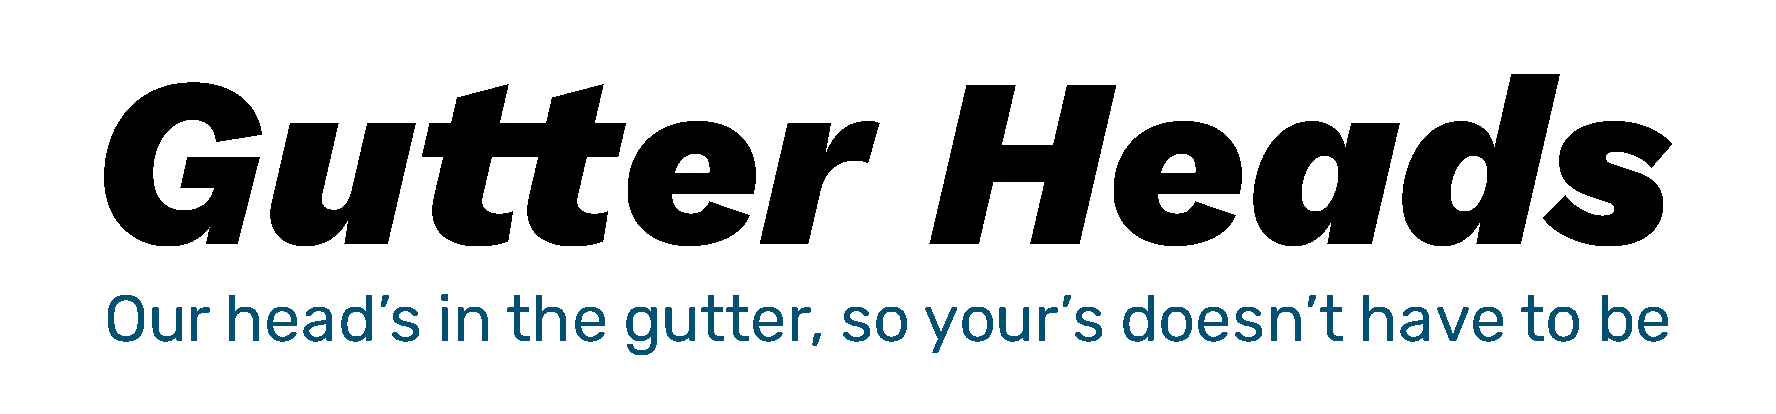 Gutter Heads Logo